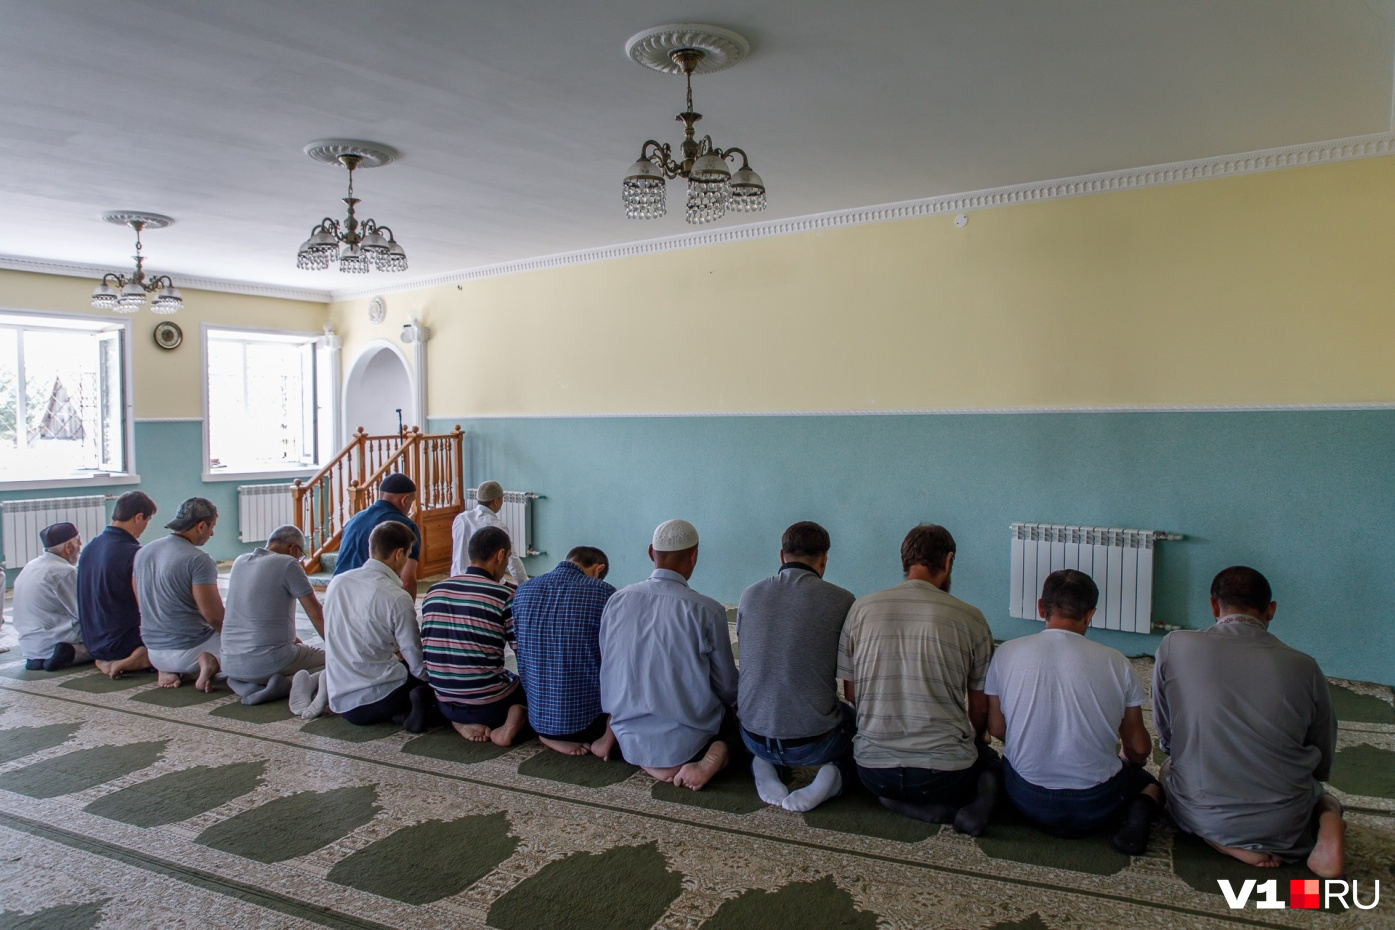 Мужчины утром отправятся в мечеть, а жены будут ждать дома с угощениями 